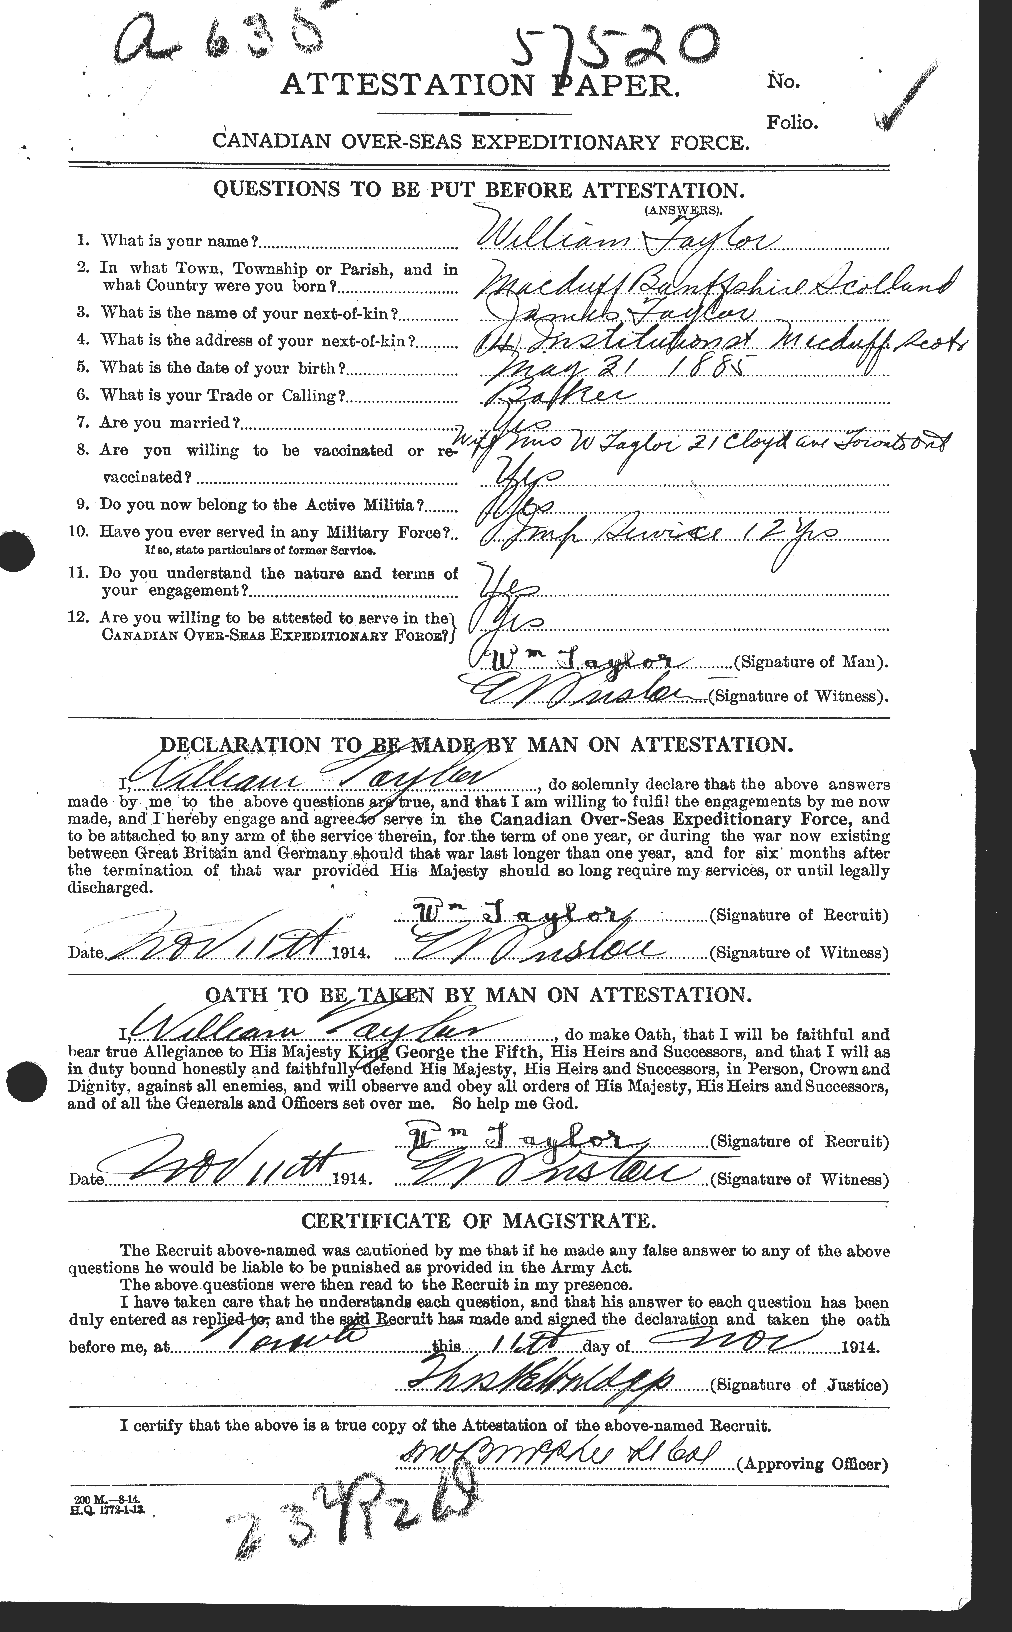 Dossiers du Personnel de la Première Guerre mondiale - CEC 628127a